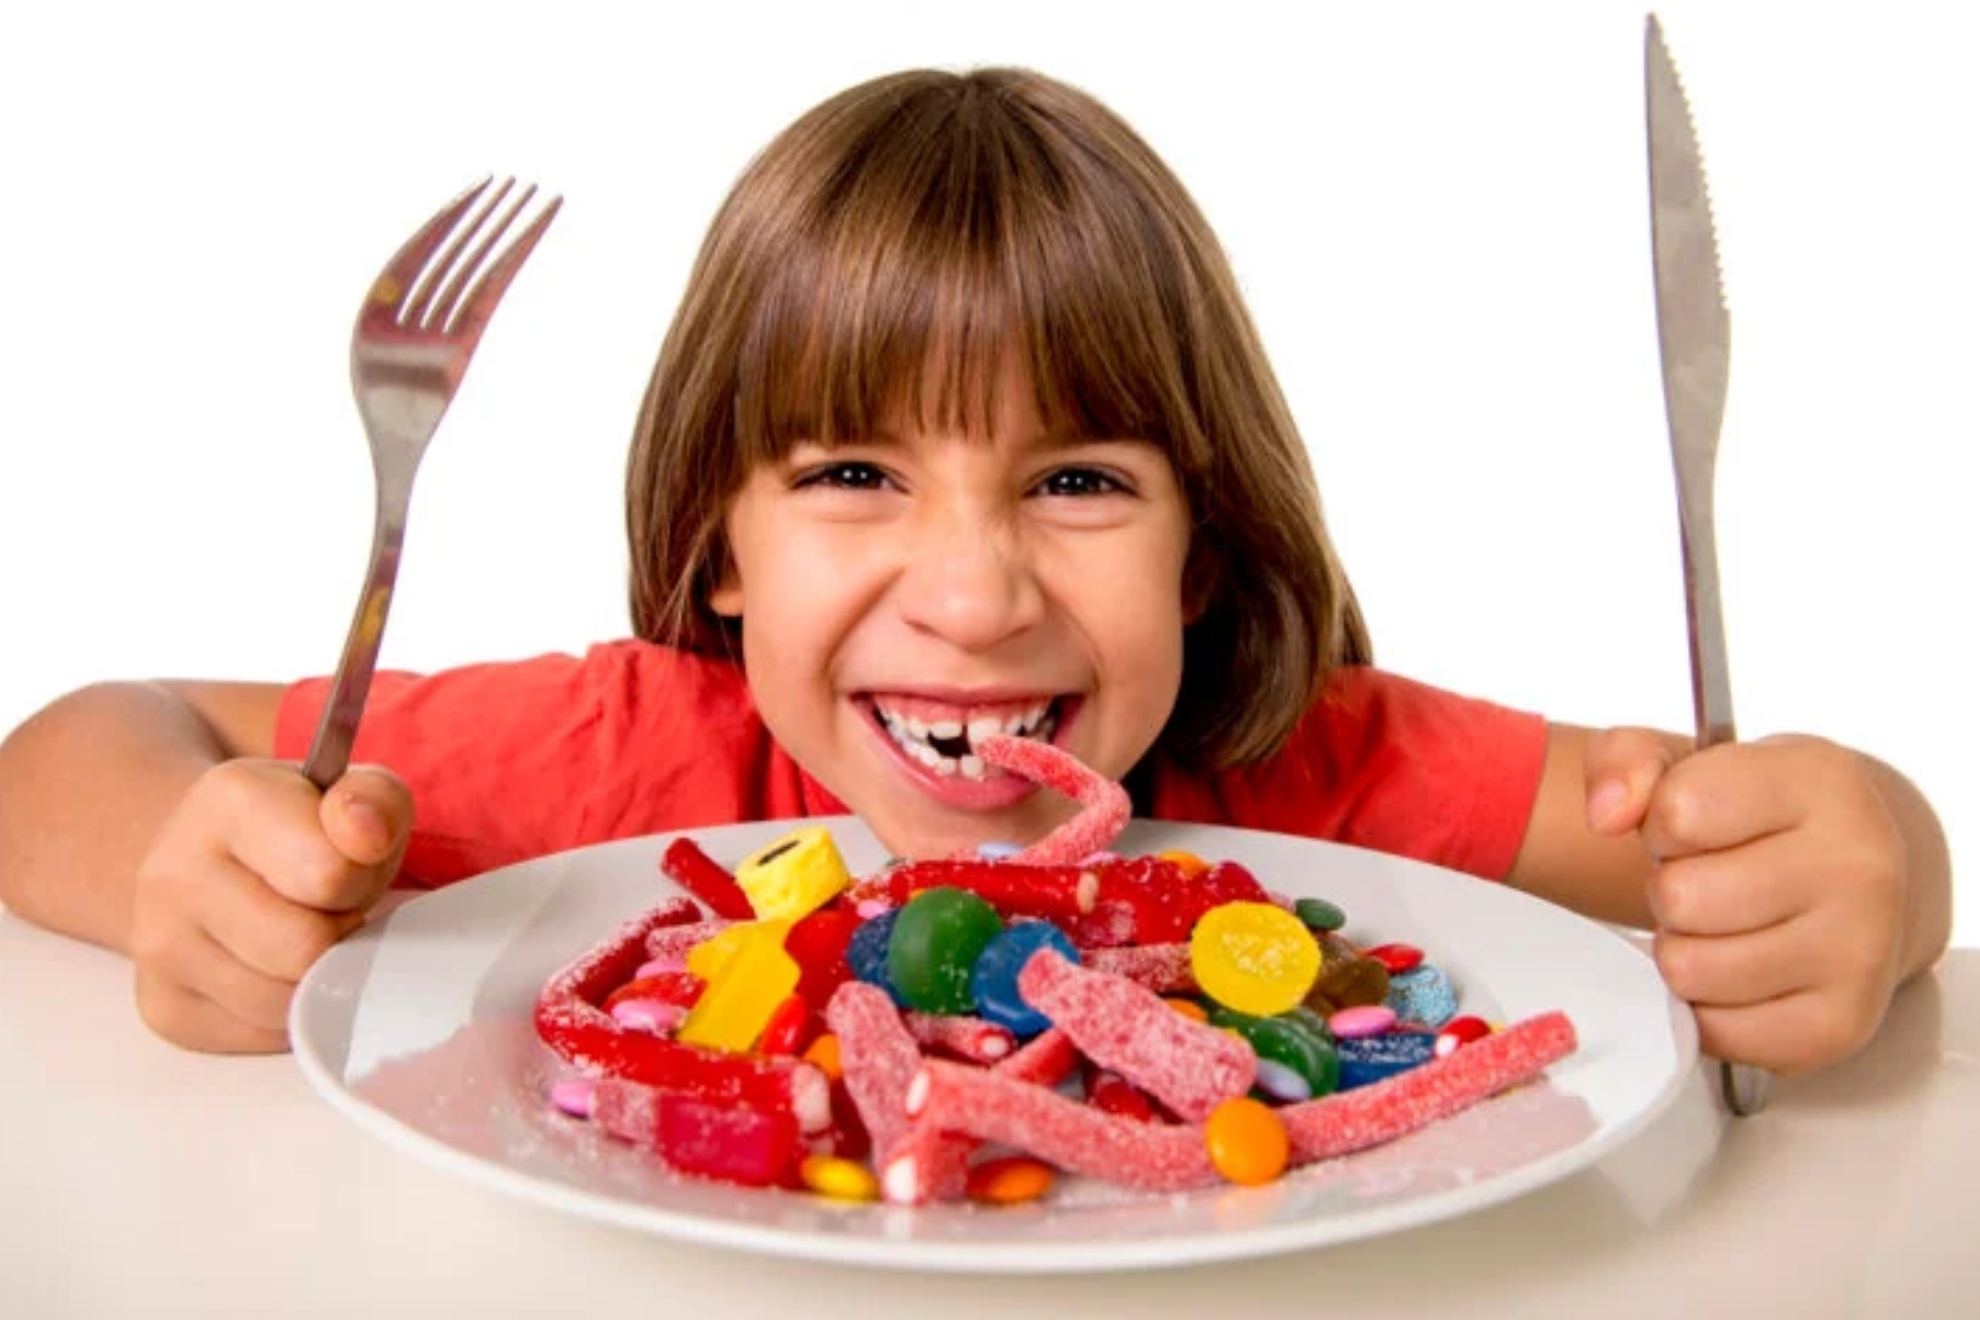 Un estudio demuestra que los niños españoles toman más del doble de azúcar recomendado por la OMS